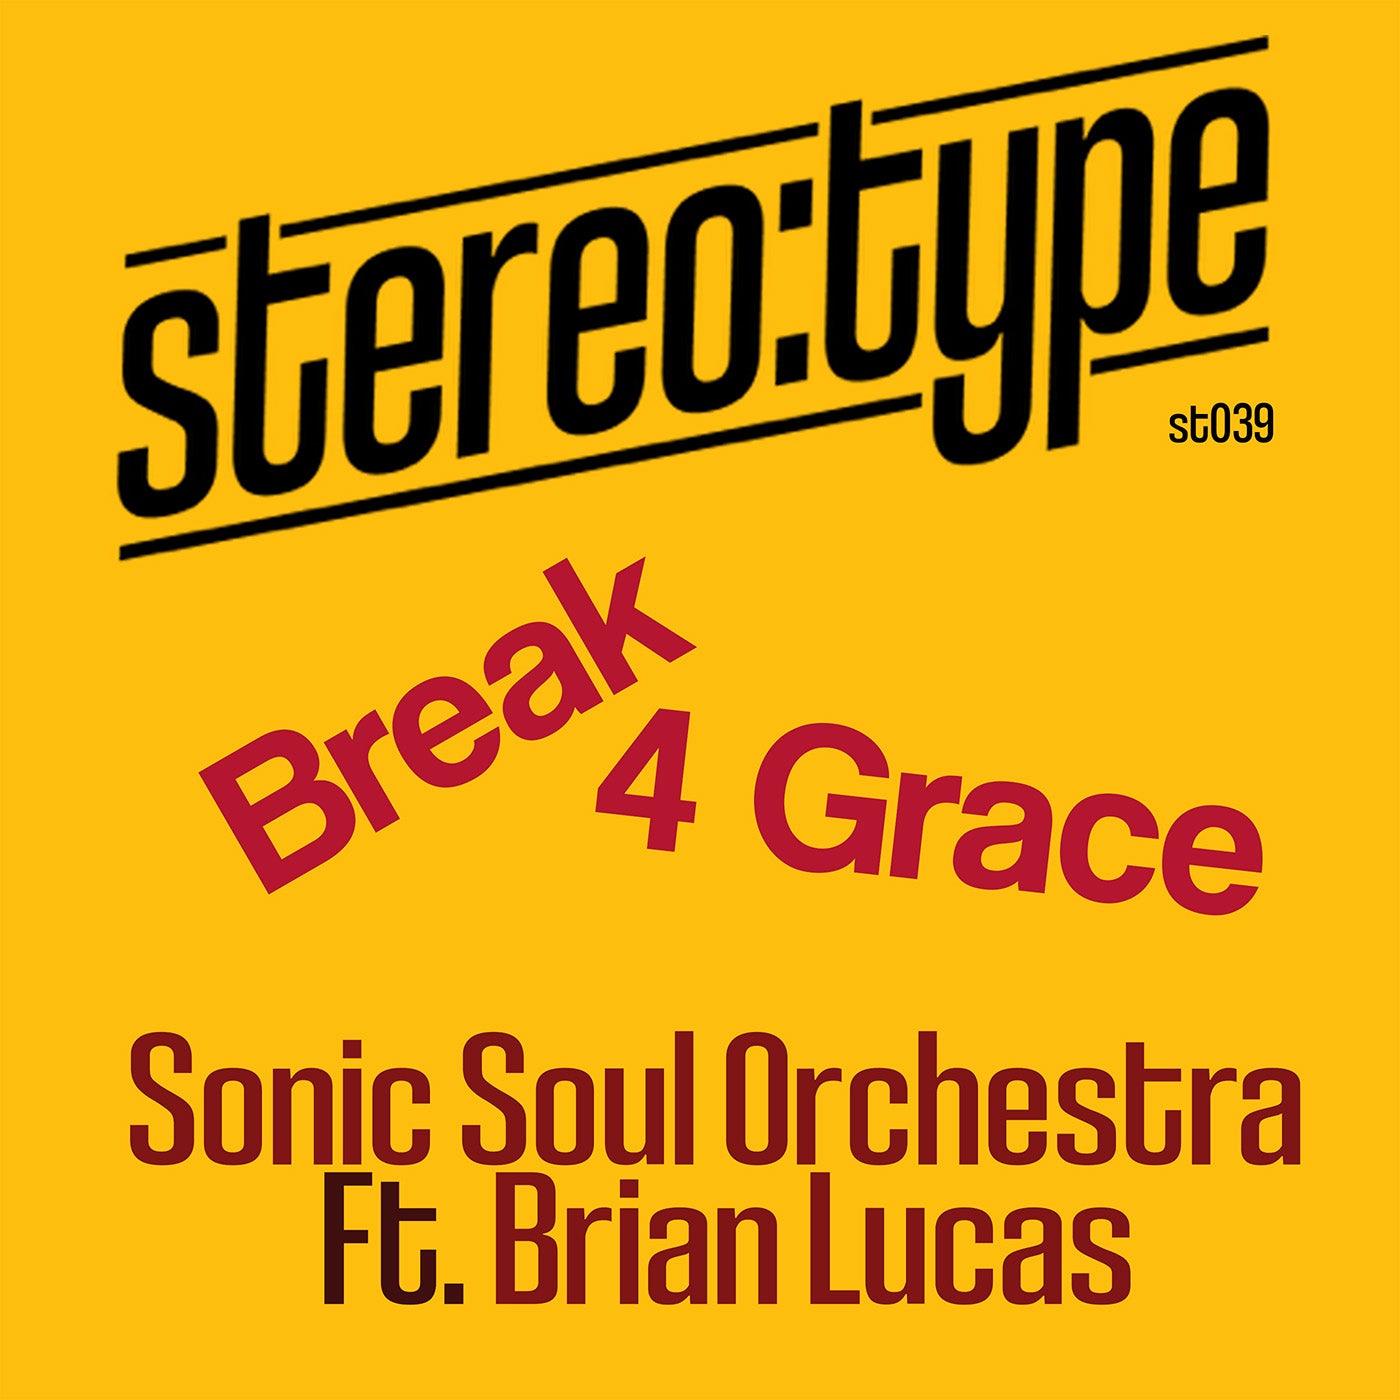 Break 4 Grace